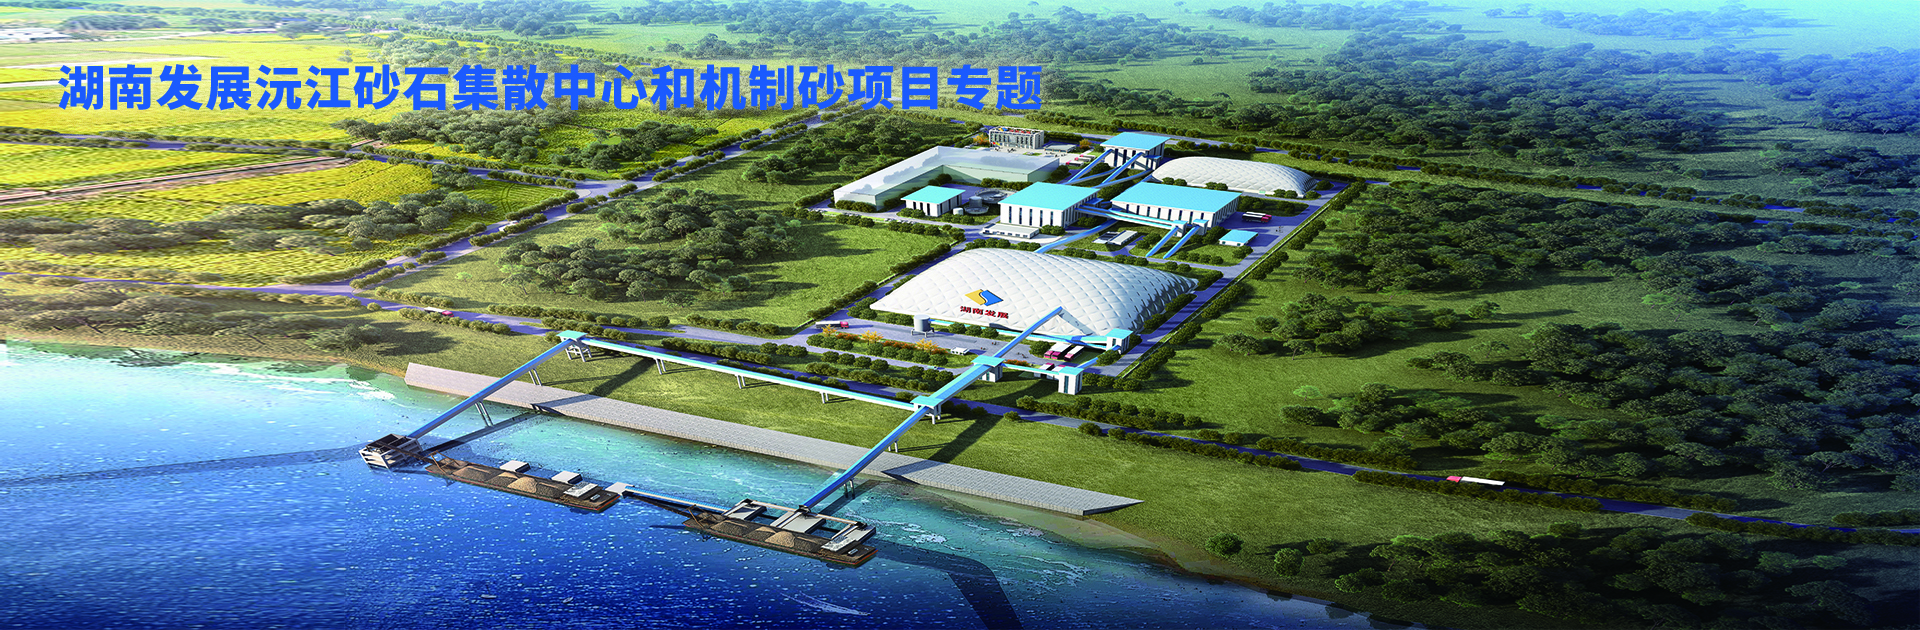 博亚体育(中国)股份有限公司沅江砂石集散中心及机制砂项目开幕视频